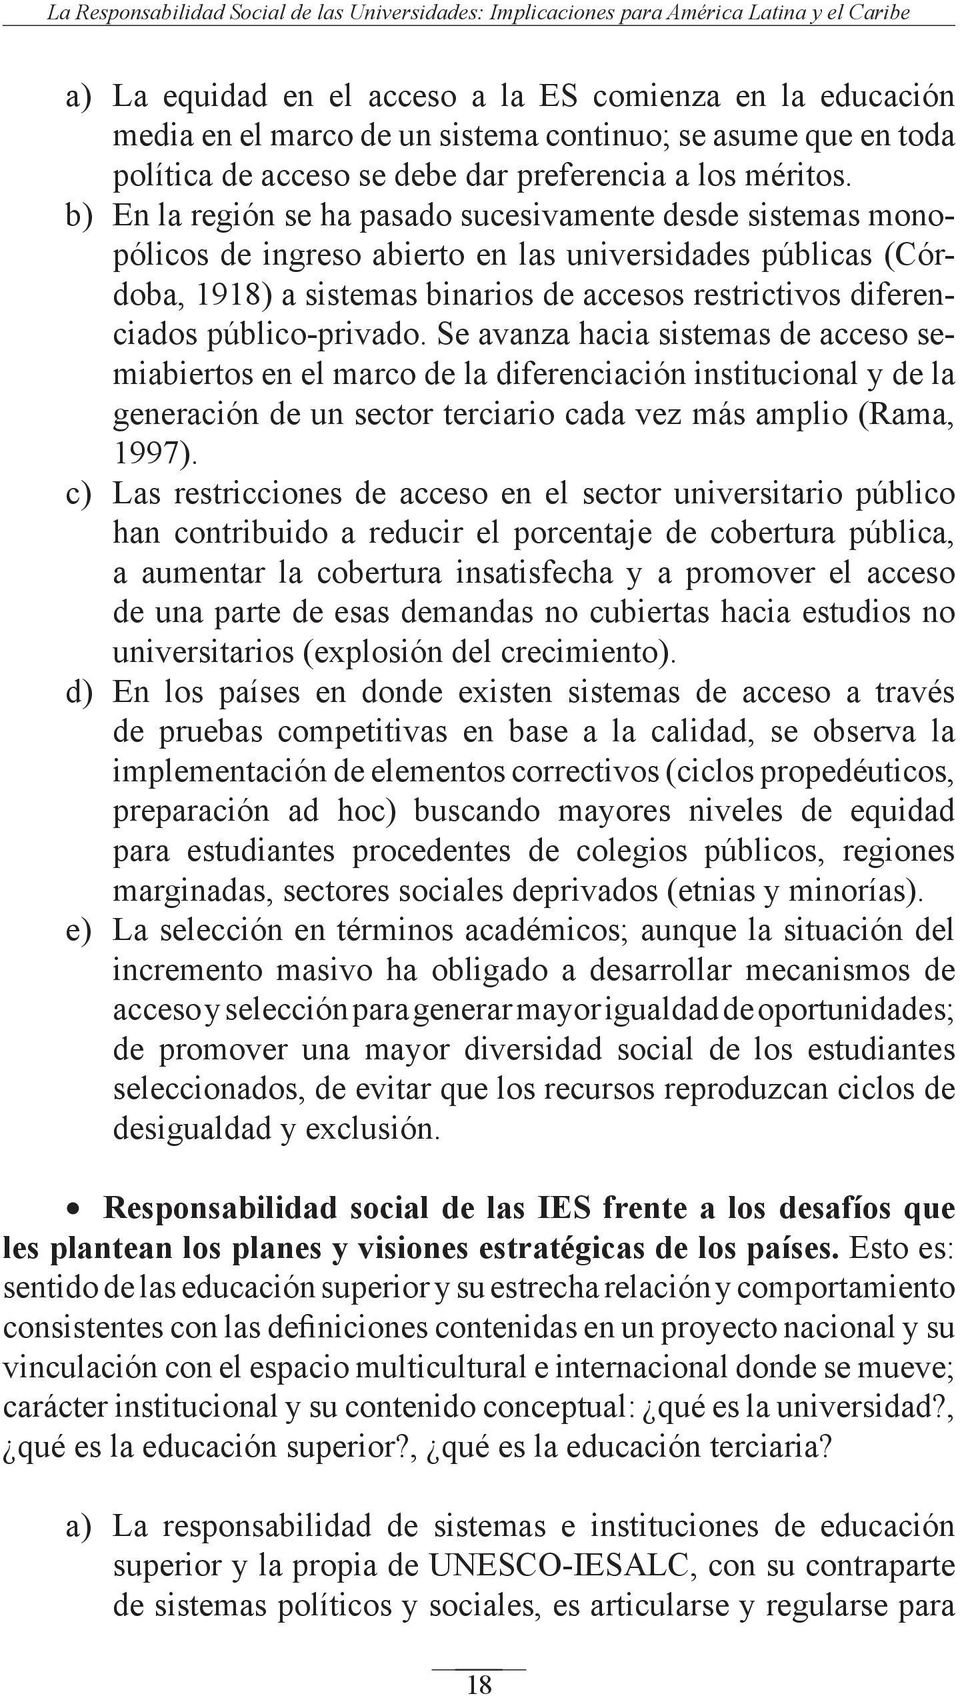 b) En la región se ha pasado sucesivamente desde sistemas monopólicos de ingreso abierto en las universidades públicas (Córdoba, 1918) a sistemas binarios de accesos restrictivos diferenciados